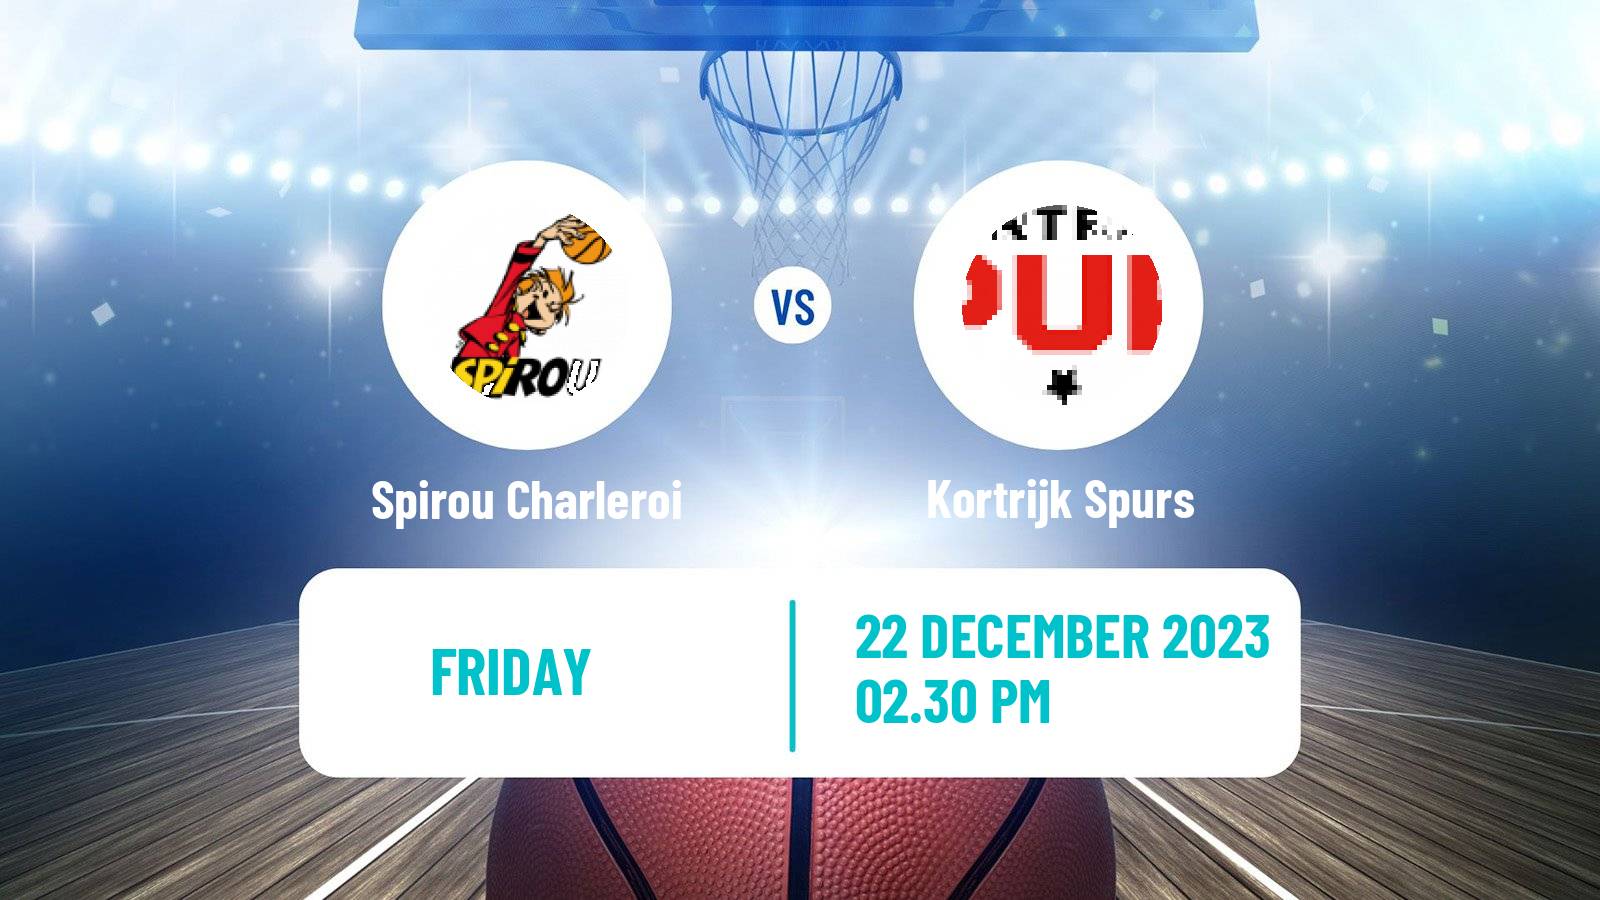 Basketball BNXT League Spirou Charleroi - Kortrijk Spurs